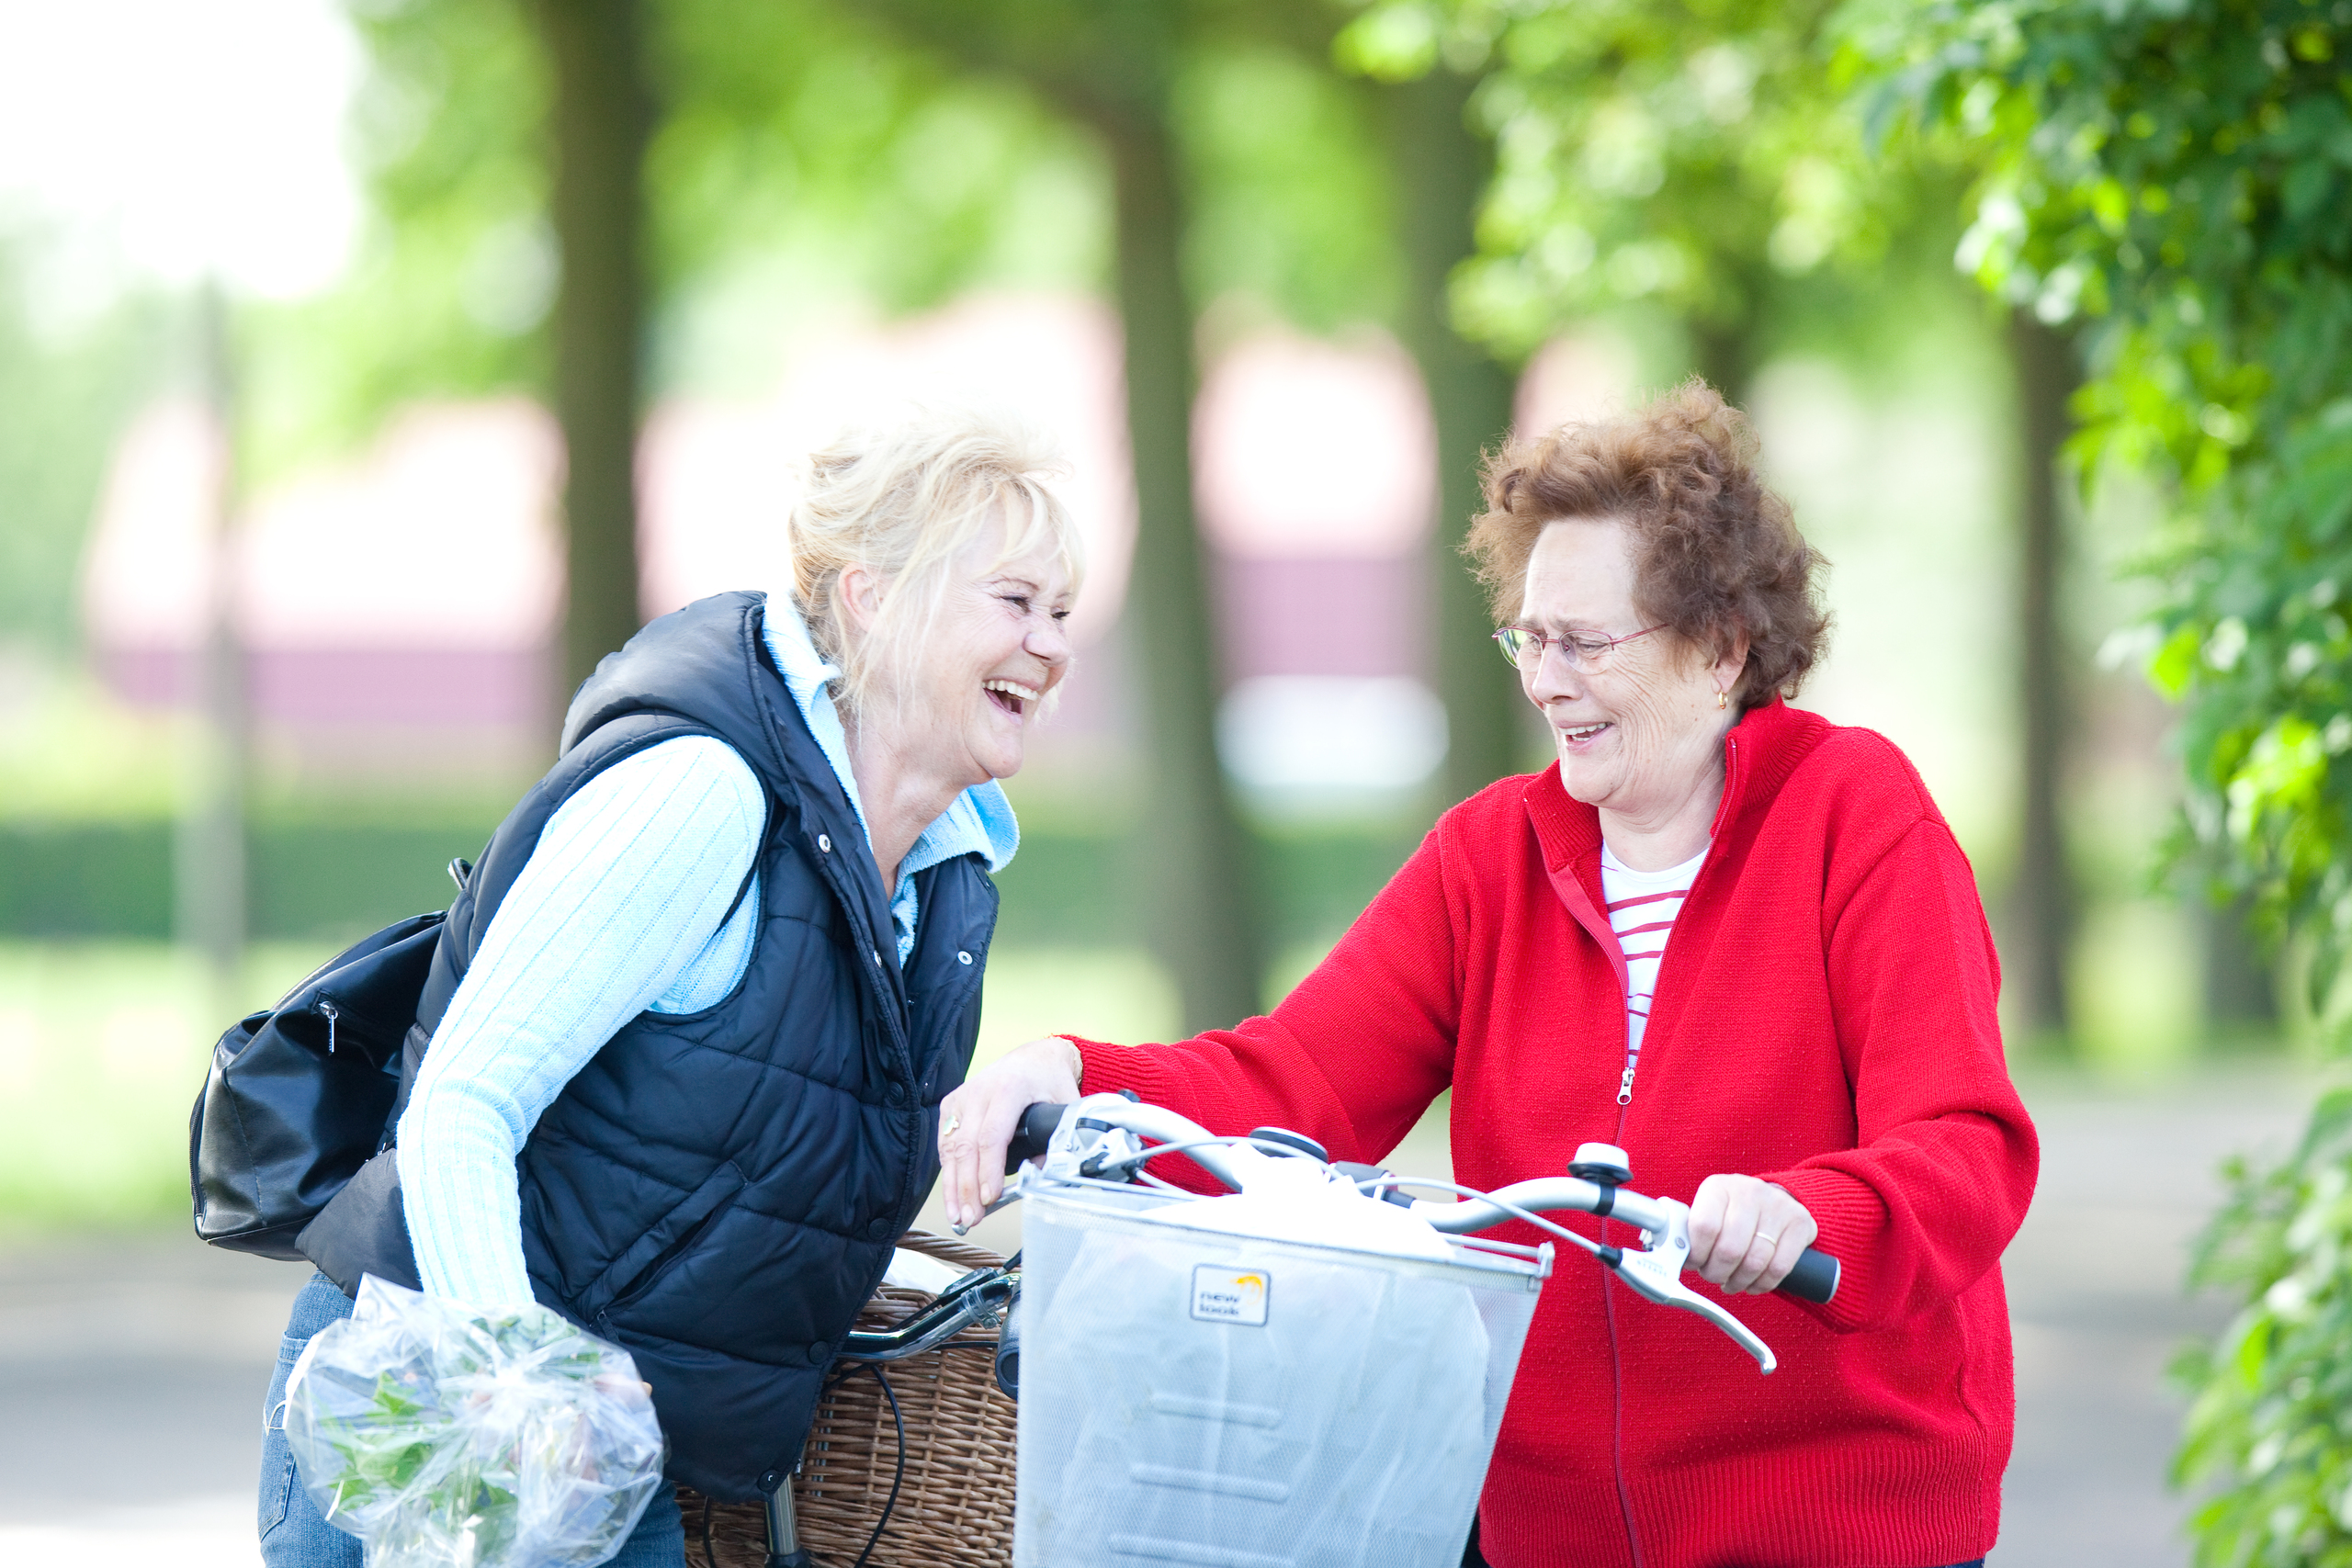 Twee oudere dames lachend met elkaar in gesprek op straat